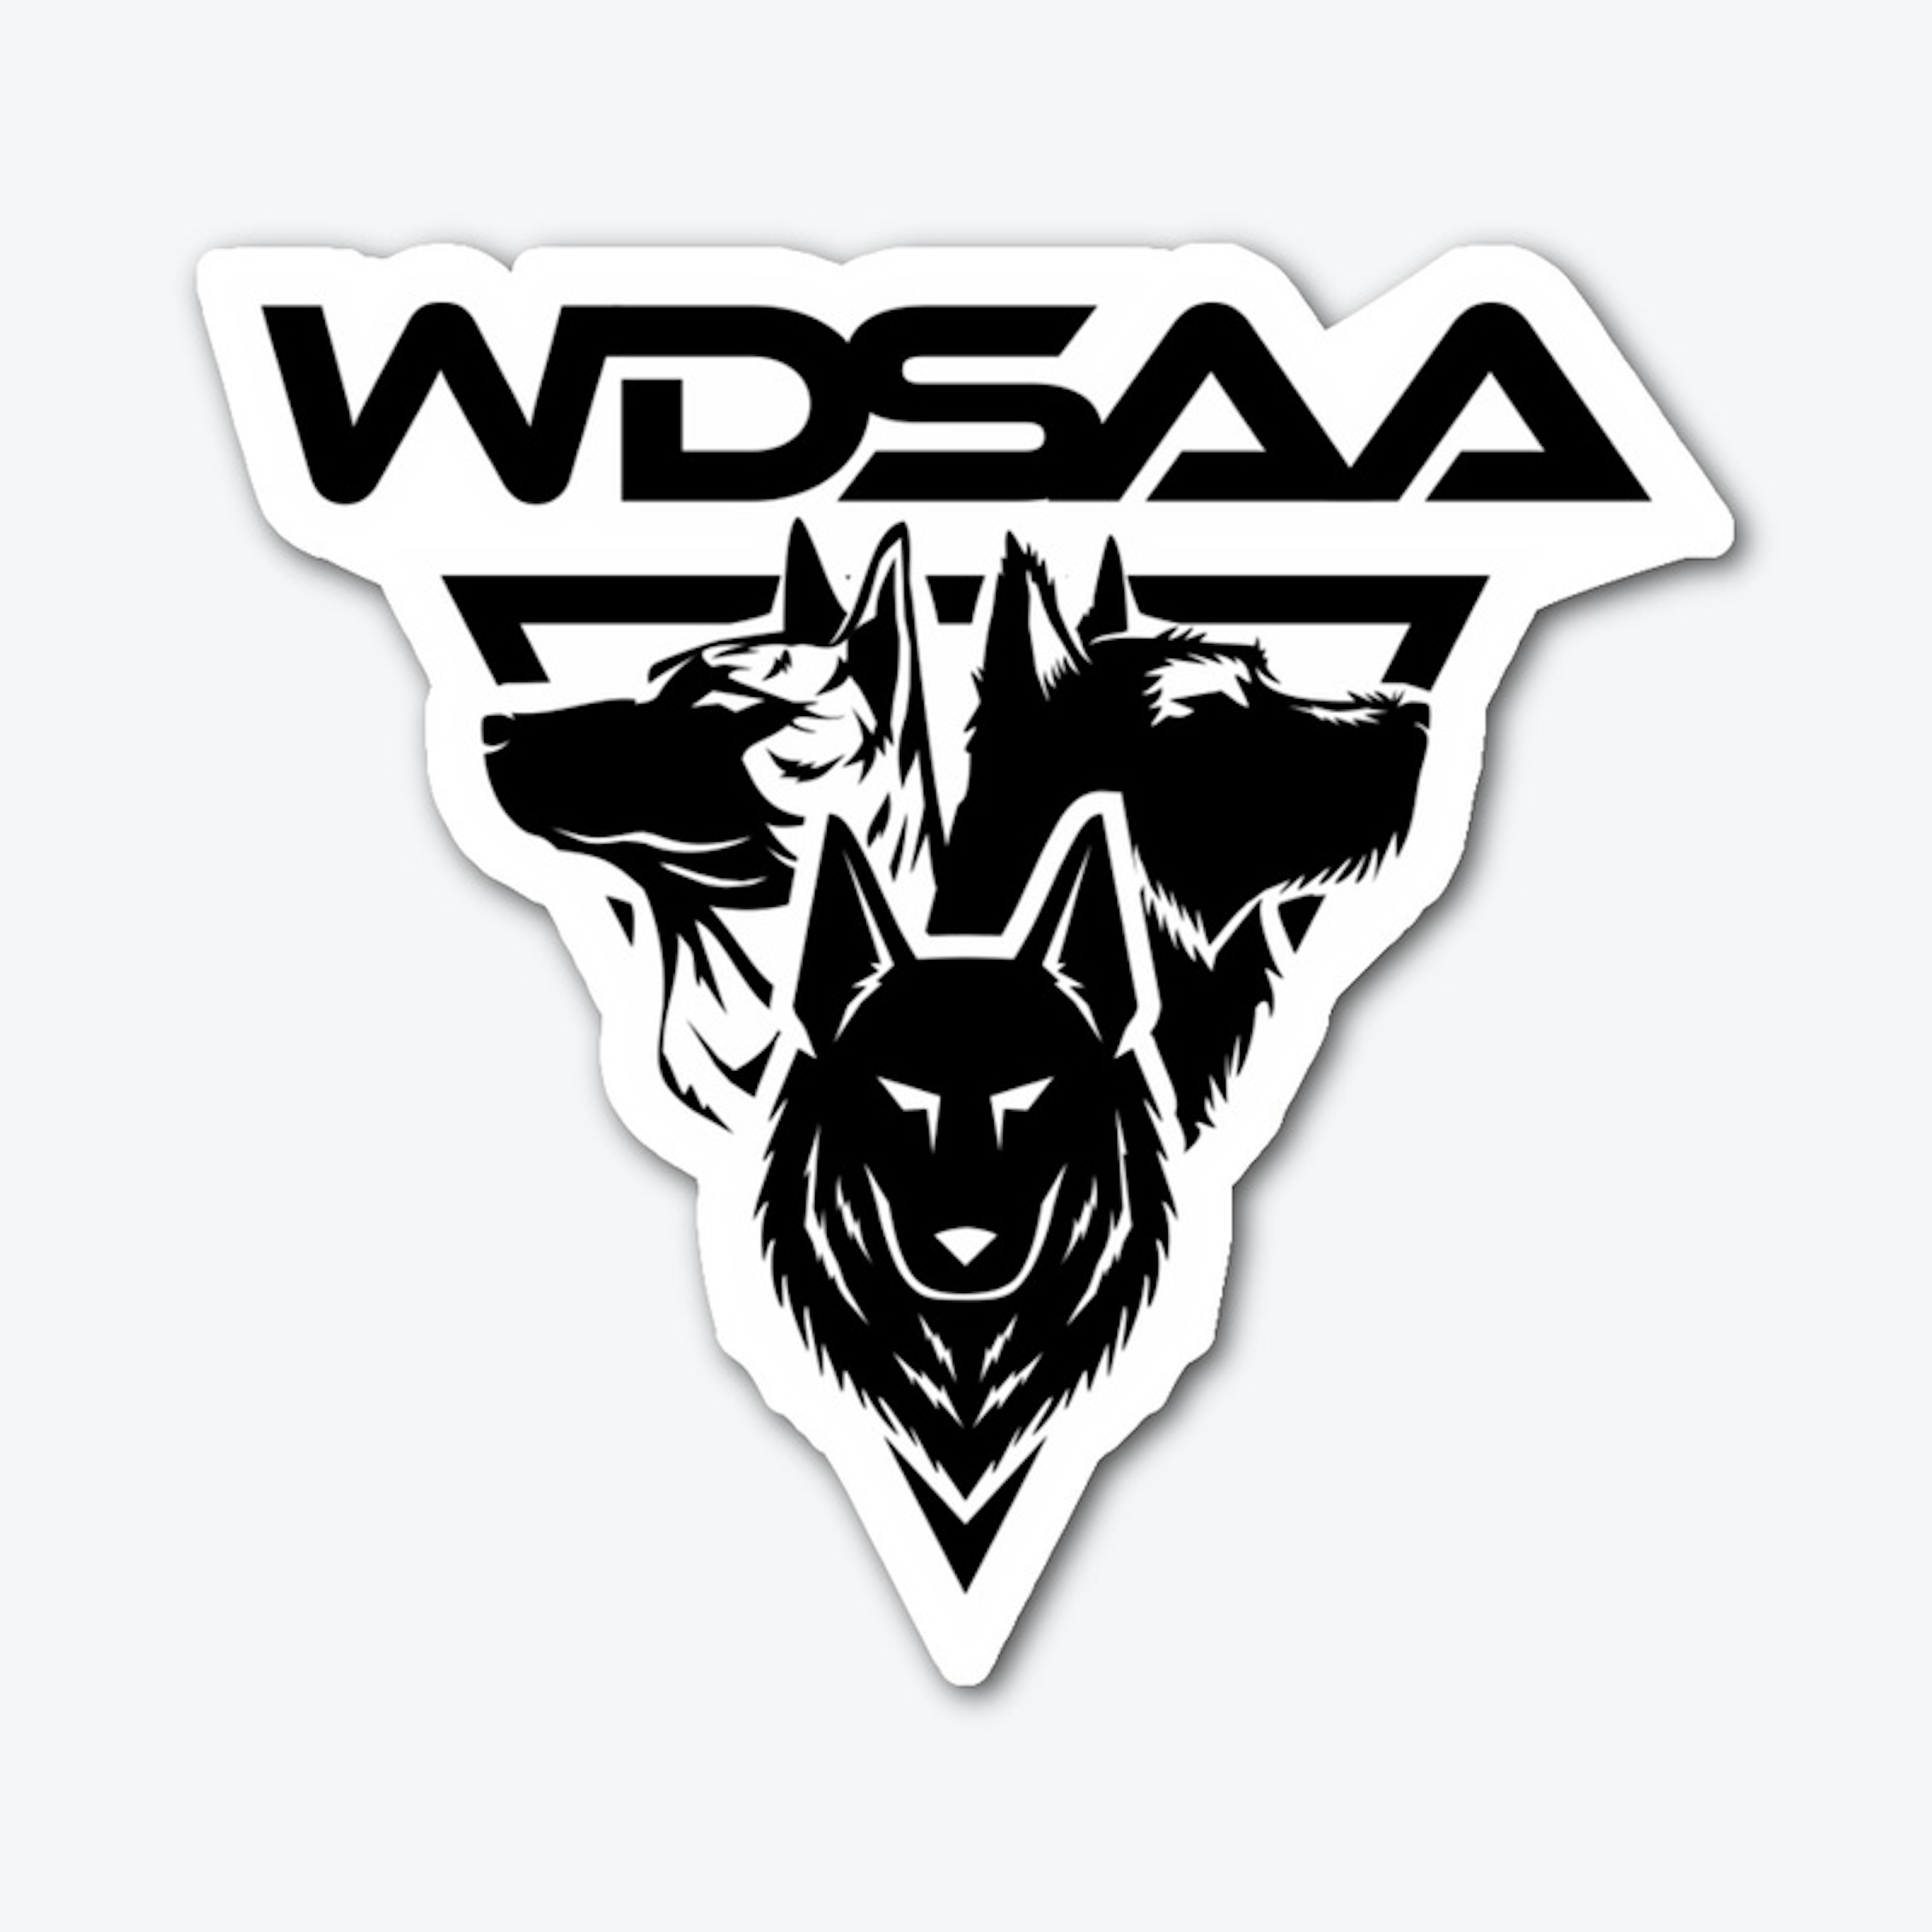 WDSAA Logo Decal